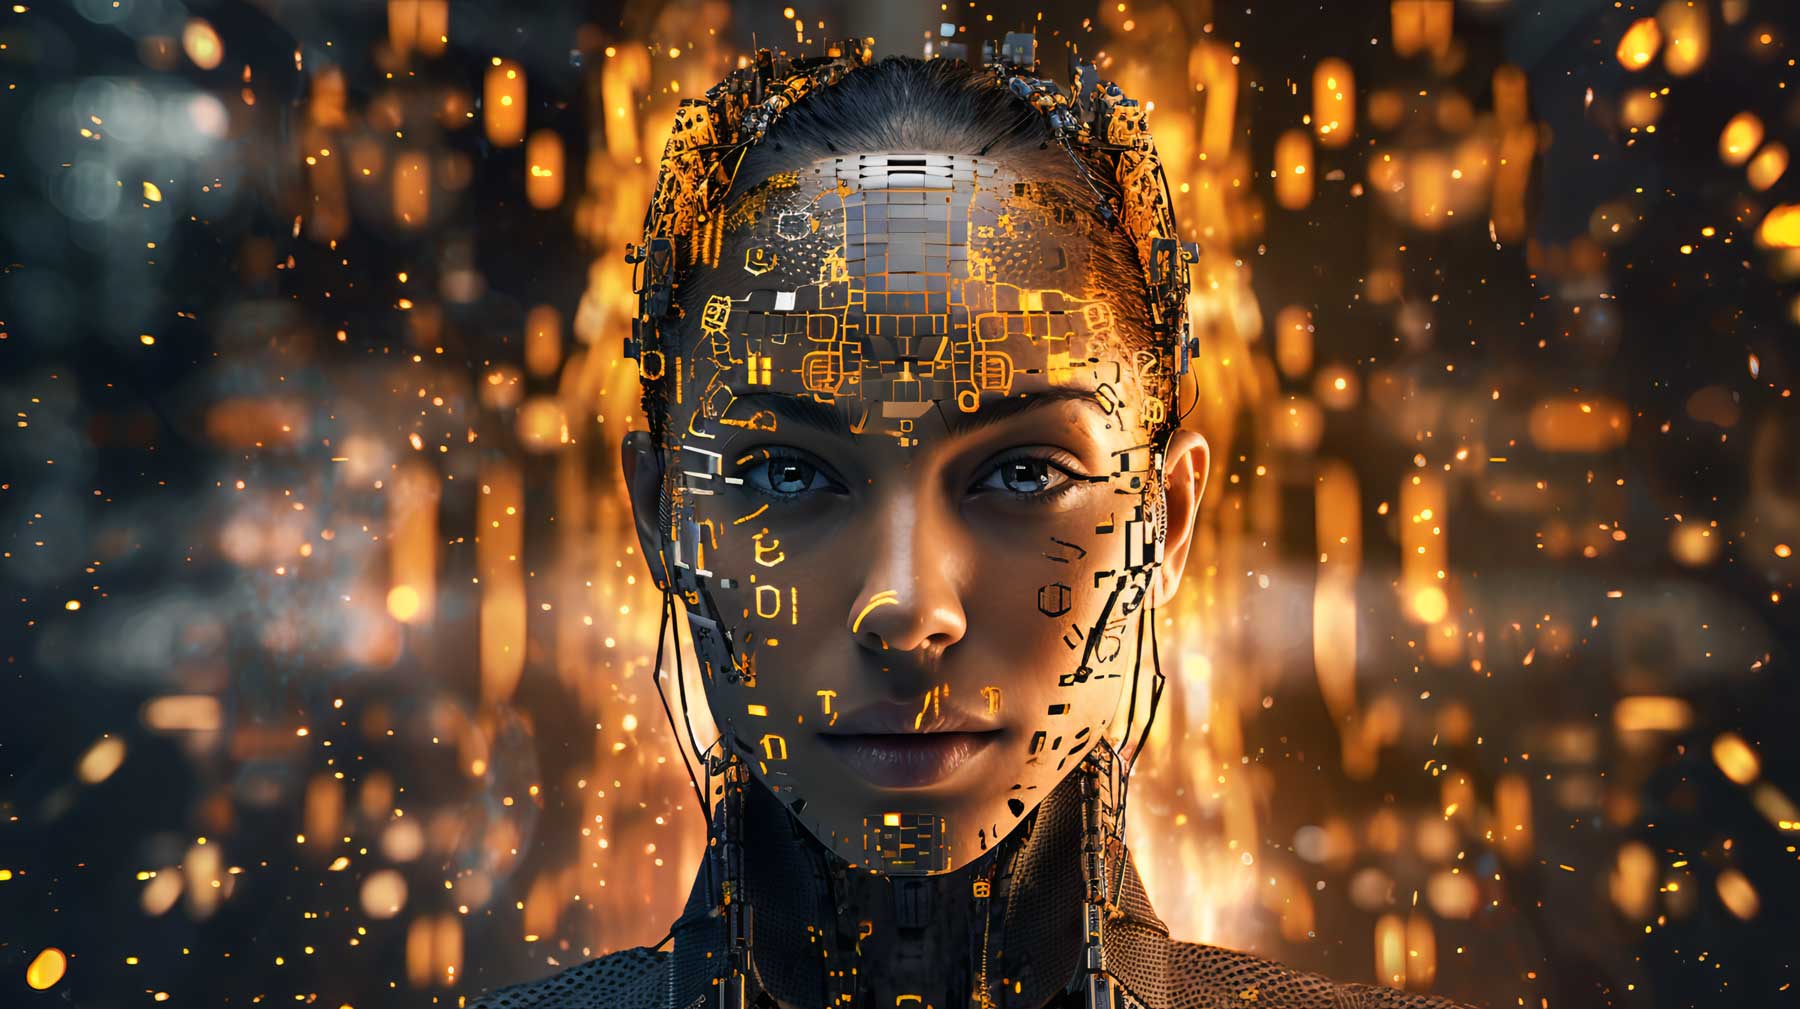 这是一张图像，展现了一位女性机器人的头部特写，她的脸部由金属和电路板构成，在发光的数字背景前显得生动。